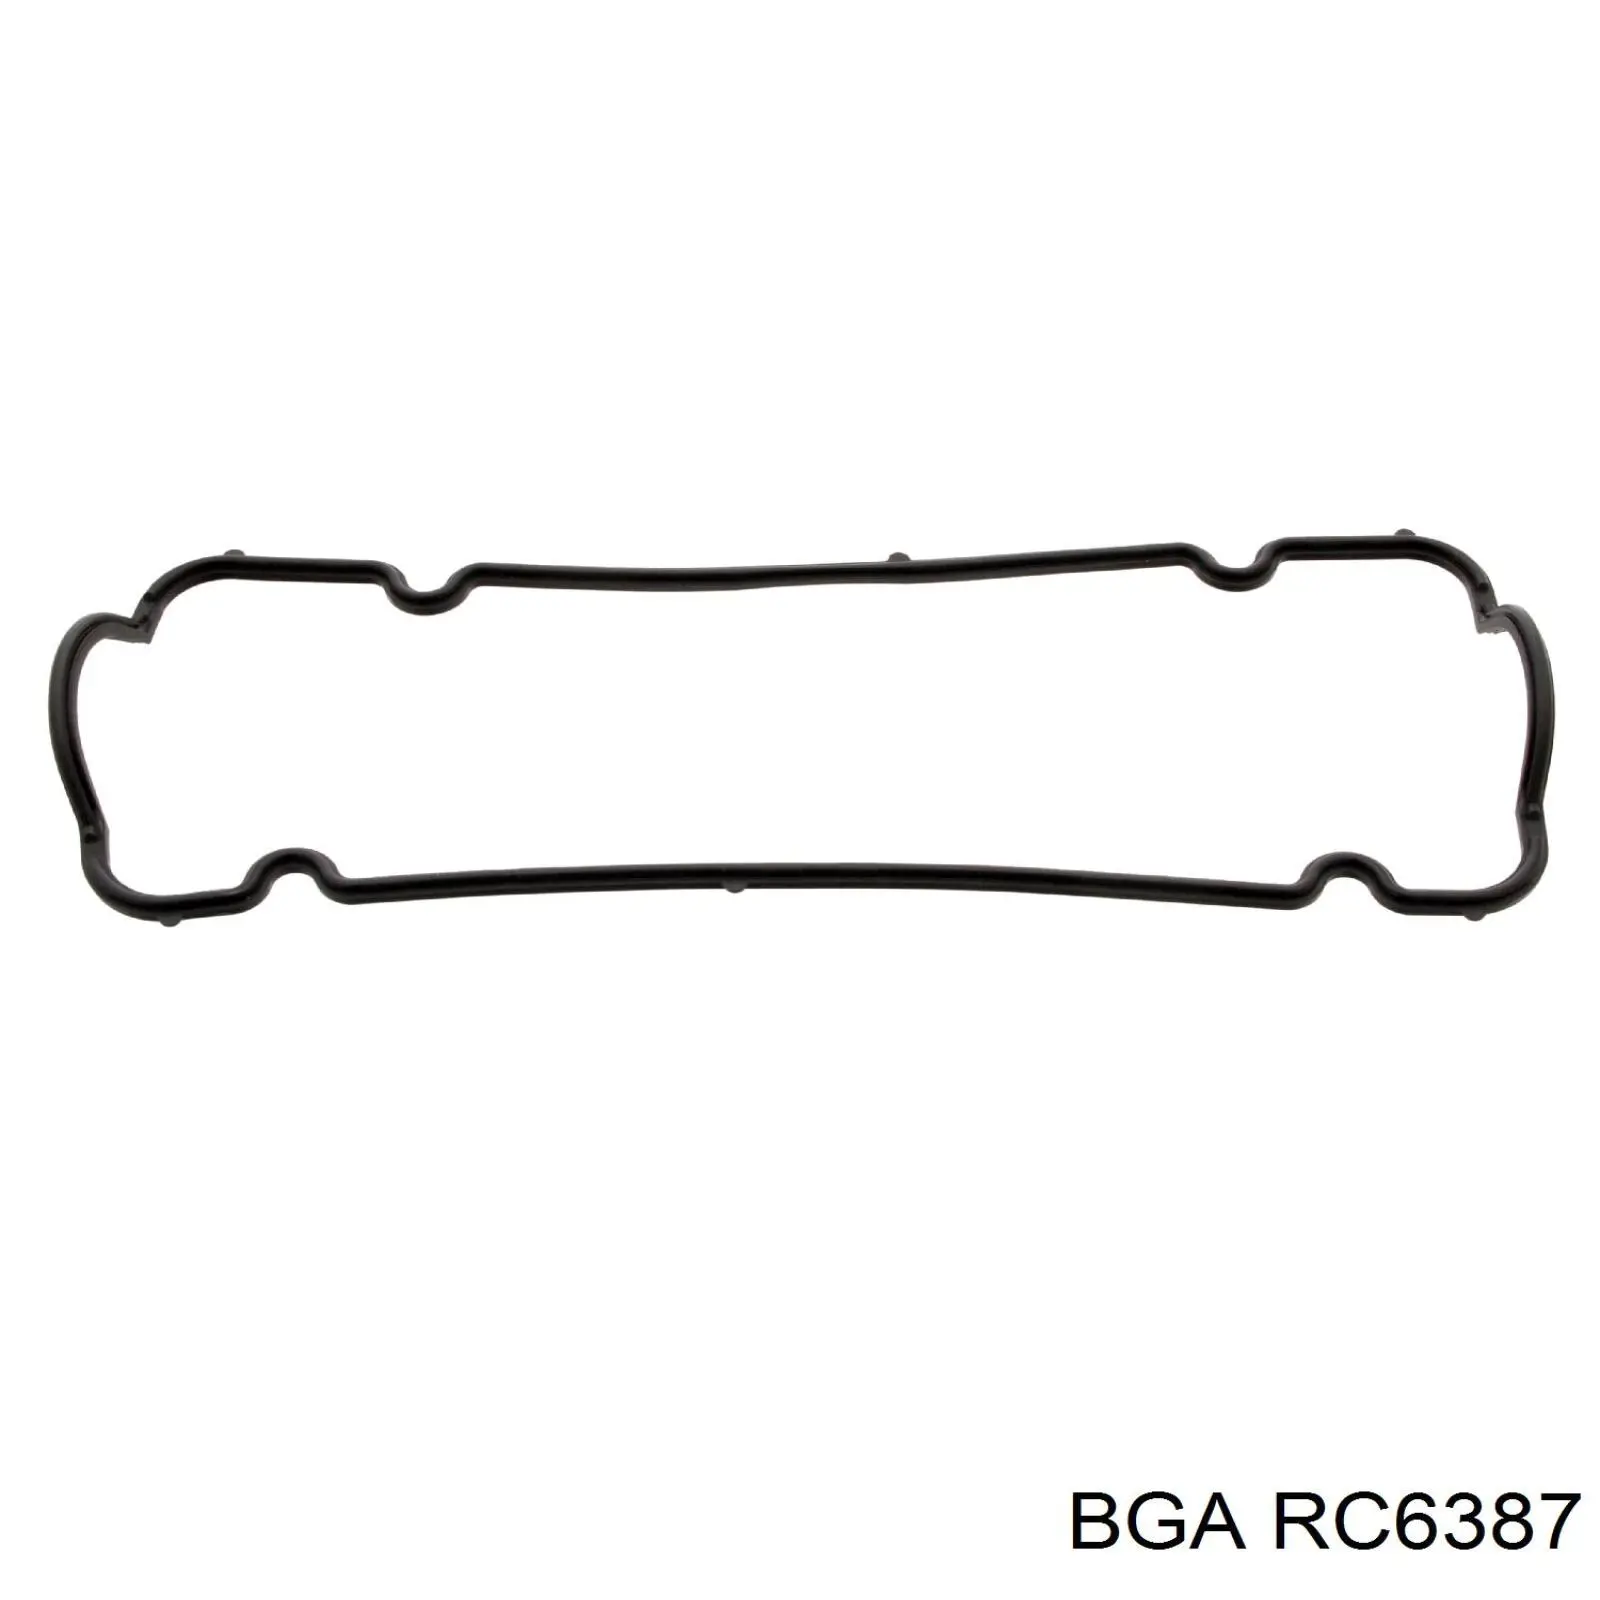 RC6387 BGA junta de la tapa de válvulas del motor